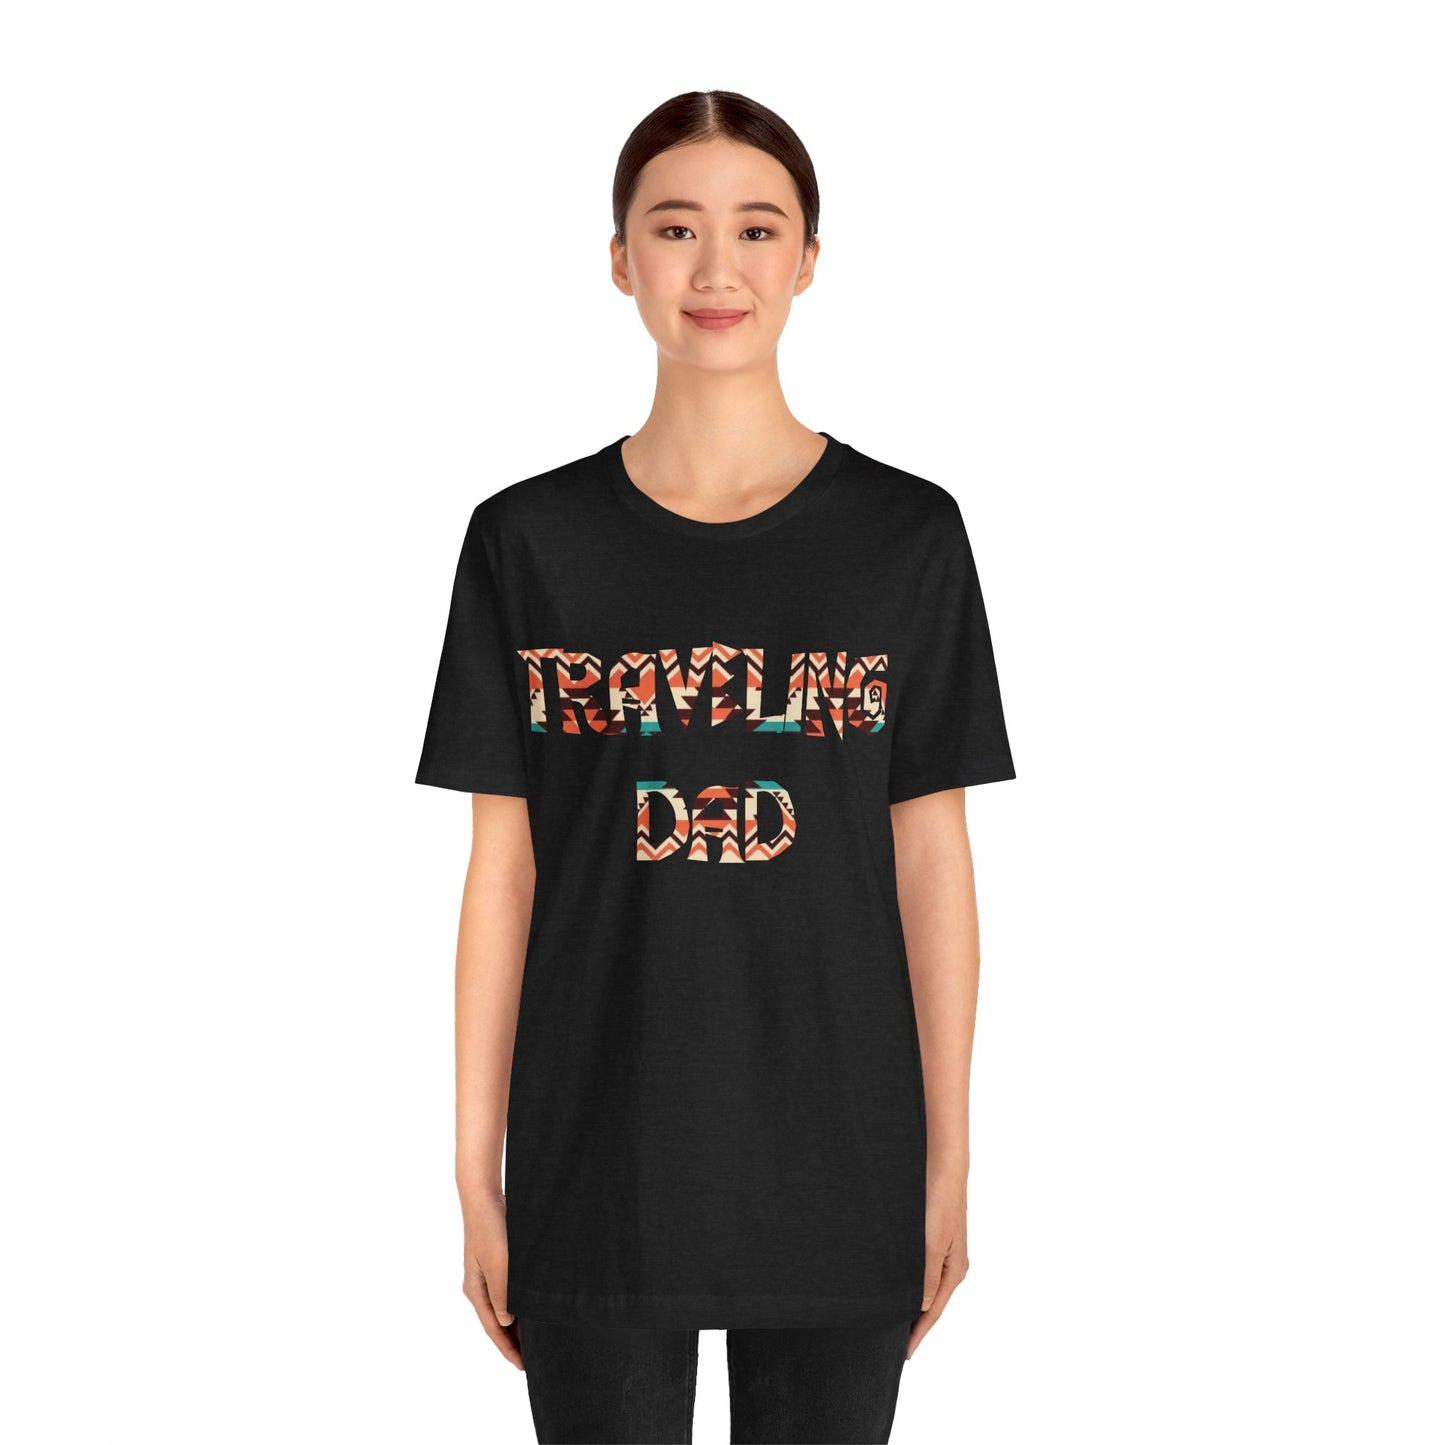 Camiseta de papá, padre viajero, camiseta para papá, papá viajero, regalo para papá, camiseta hombre, padre aventurero, dia del padre, papá.